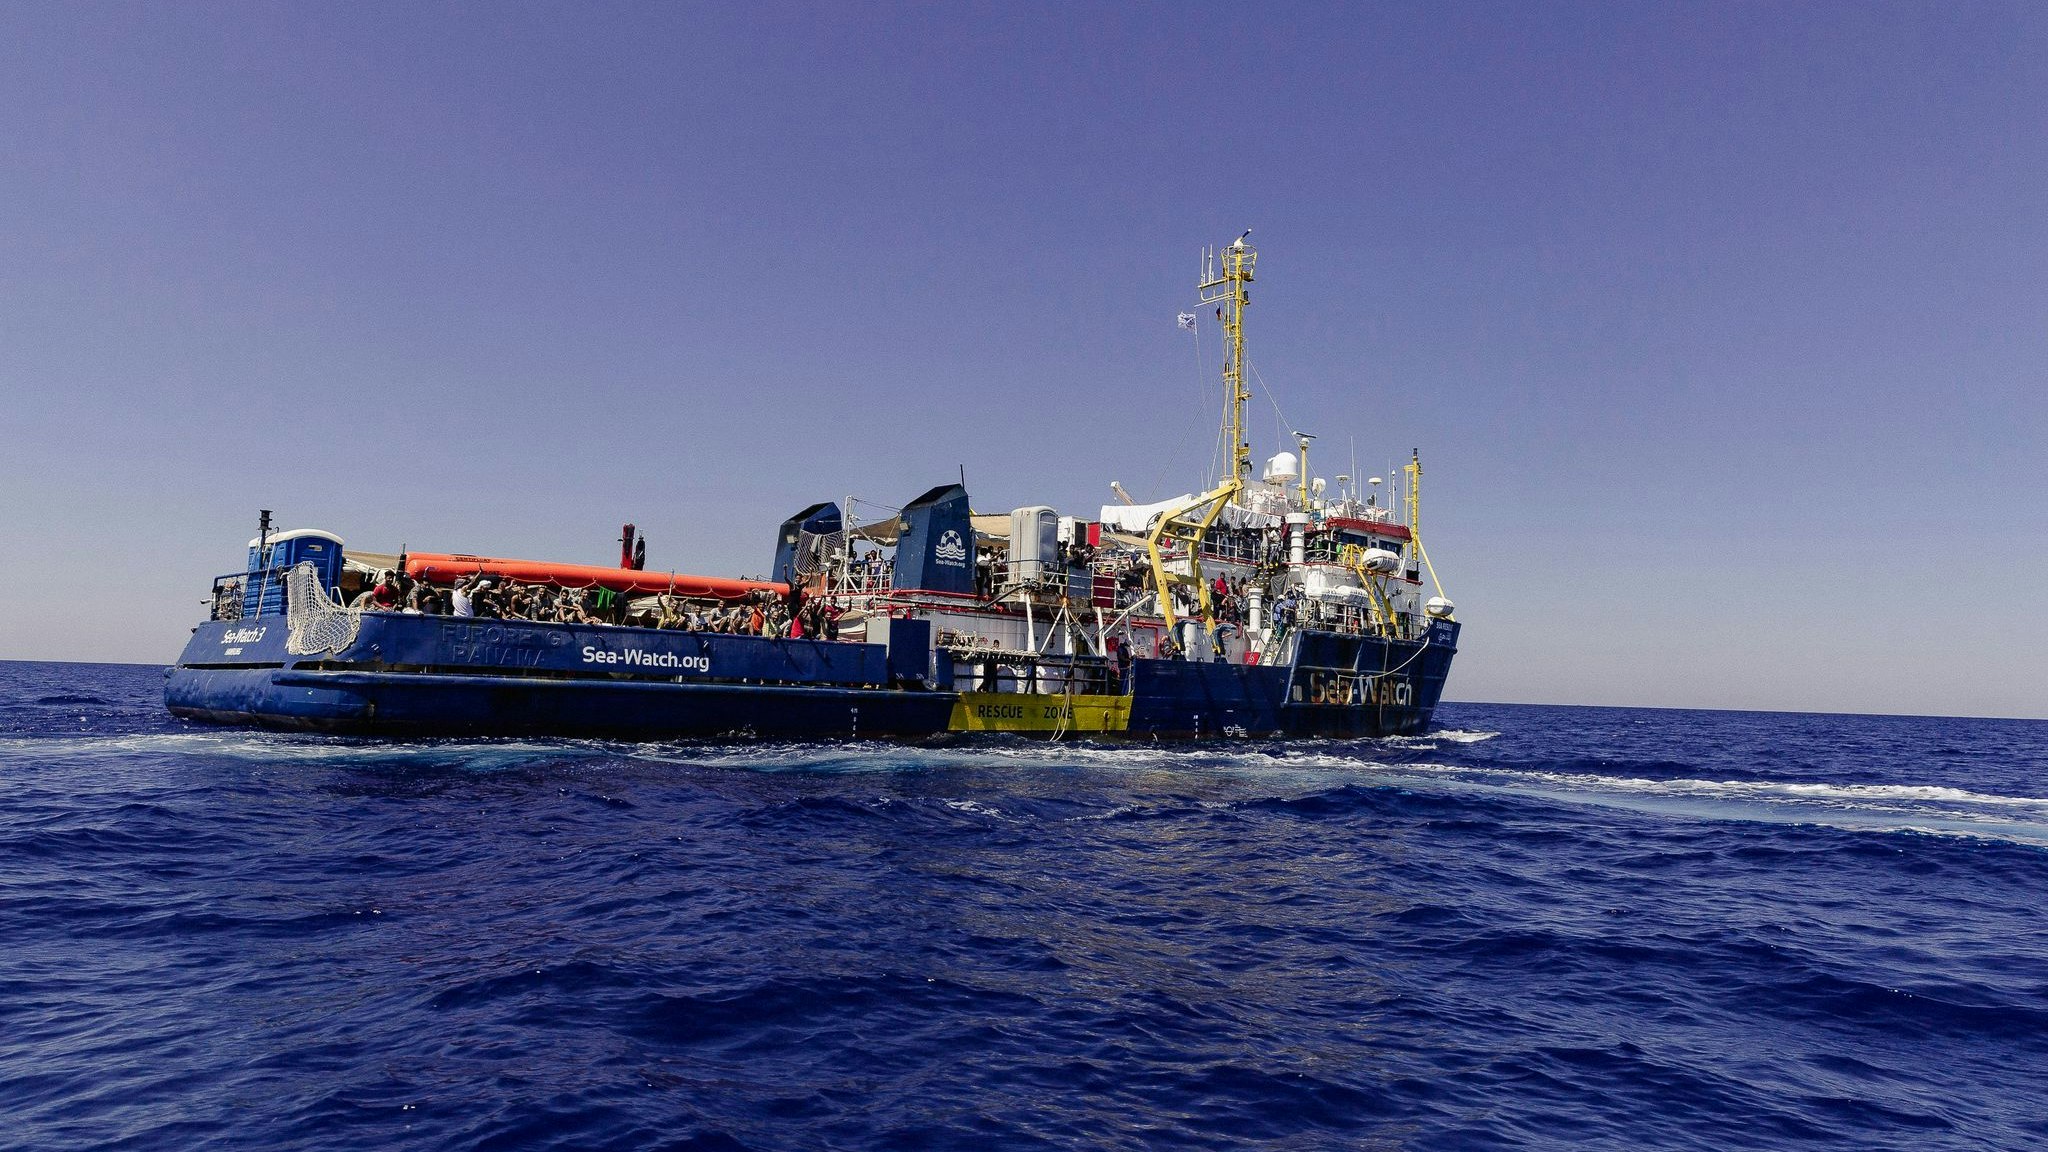 Einer der Vorgänger des neuen Schiffs: Die Sea Watch 3 im Einsatz im Juli auf dem Mittelmeer. Foto: dpa/Boerding